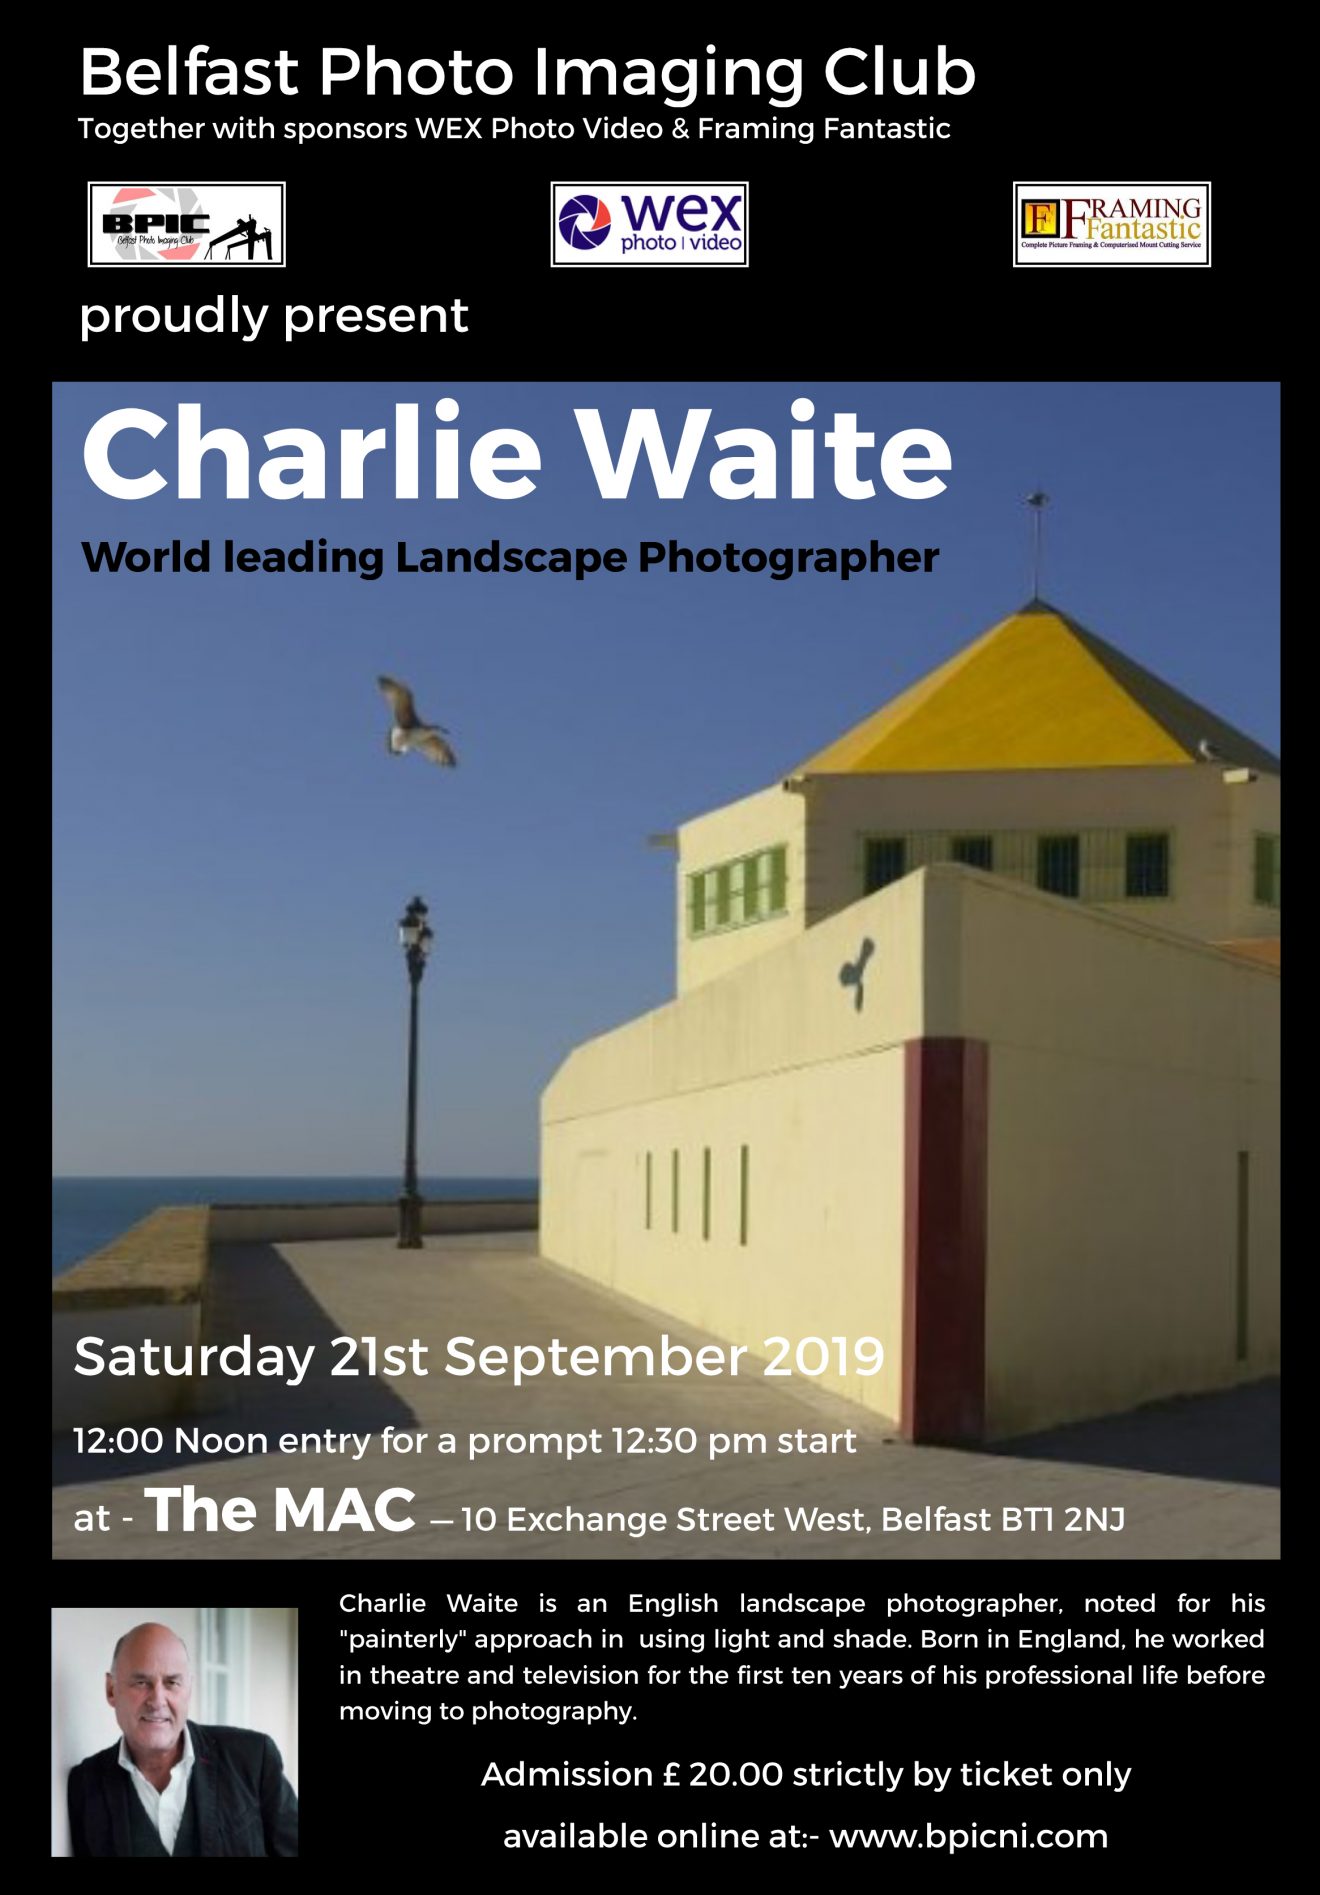 Charlie Waite at The MAC